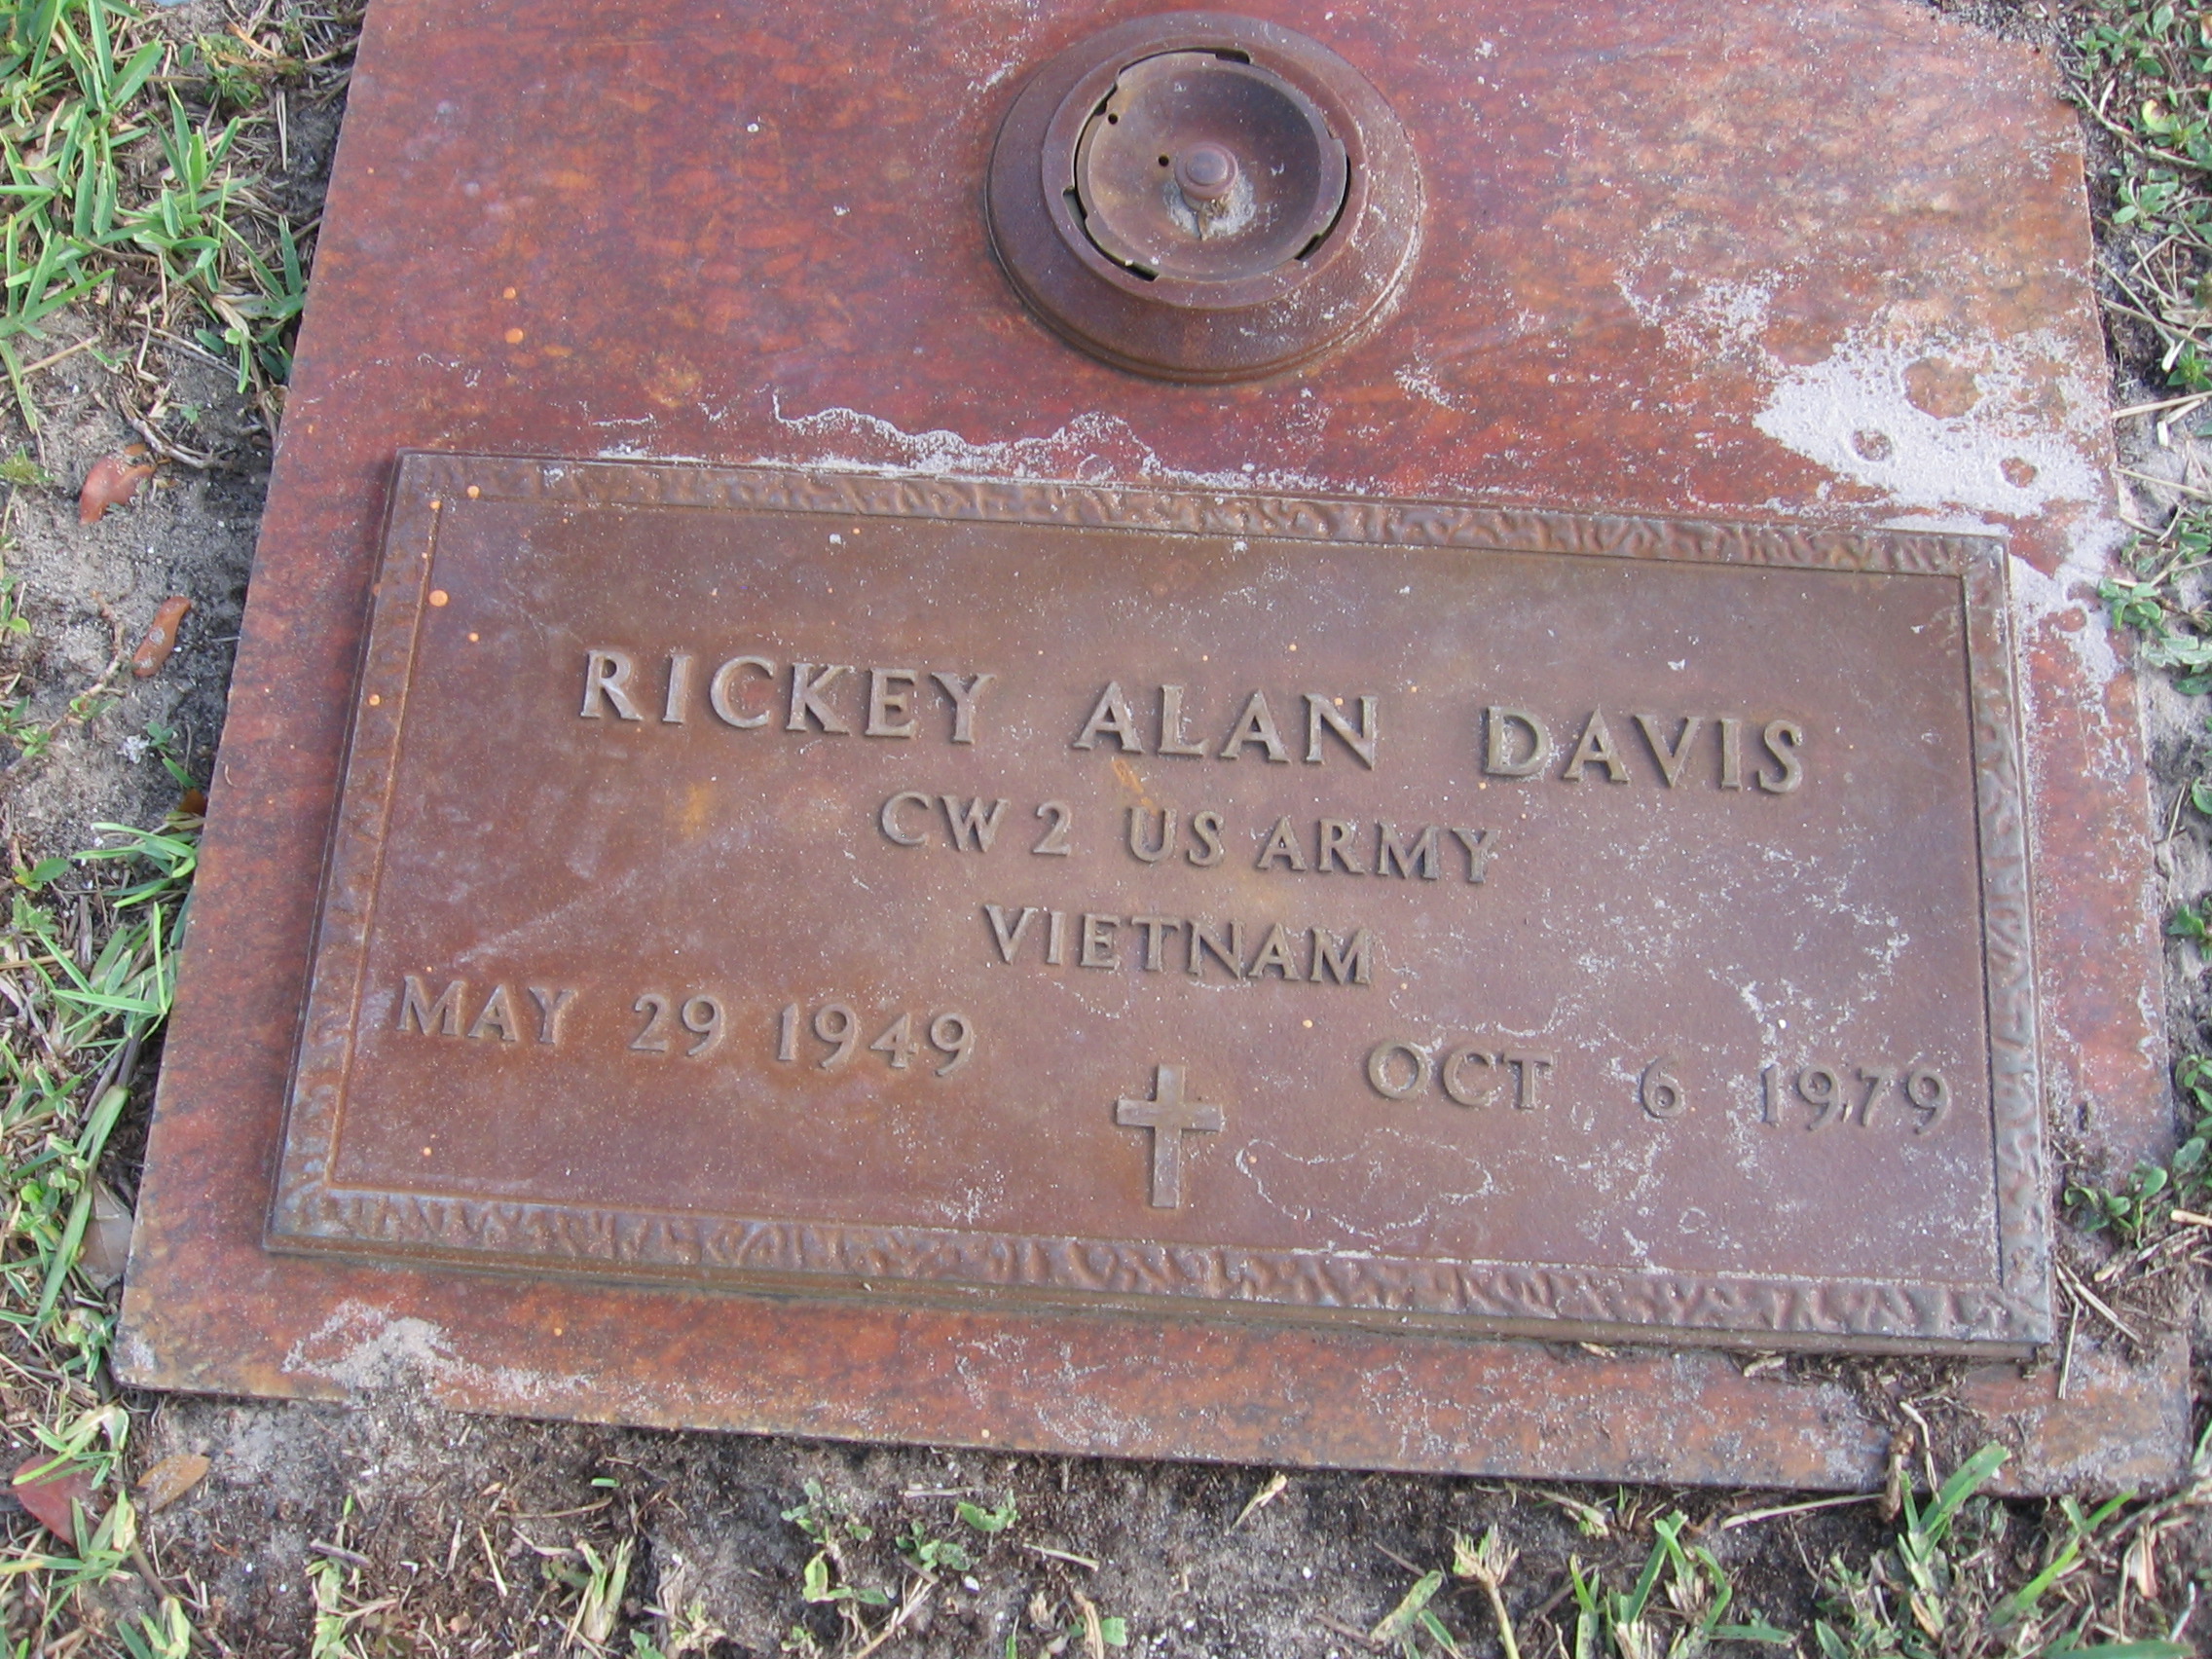 Rickey Alan Davis